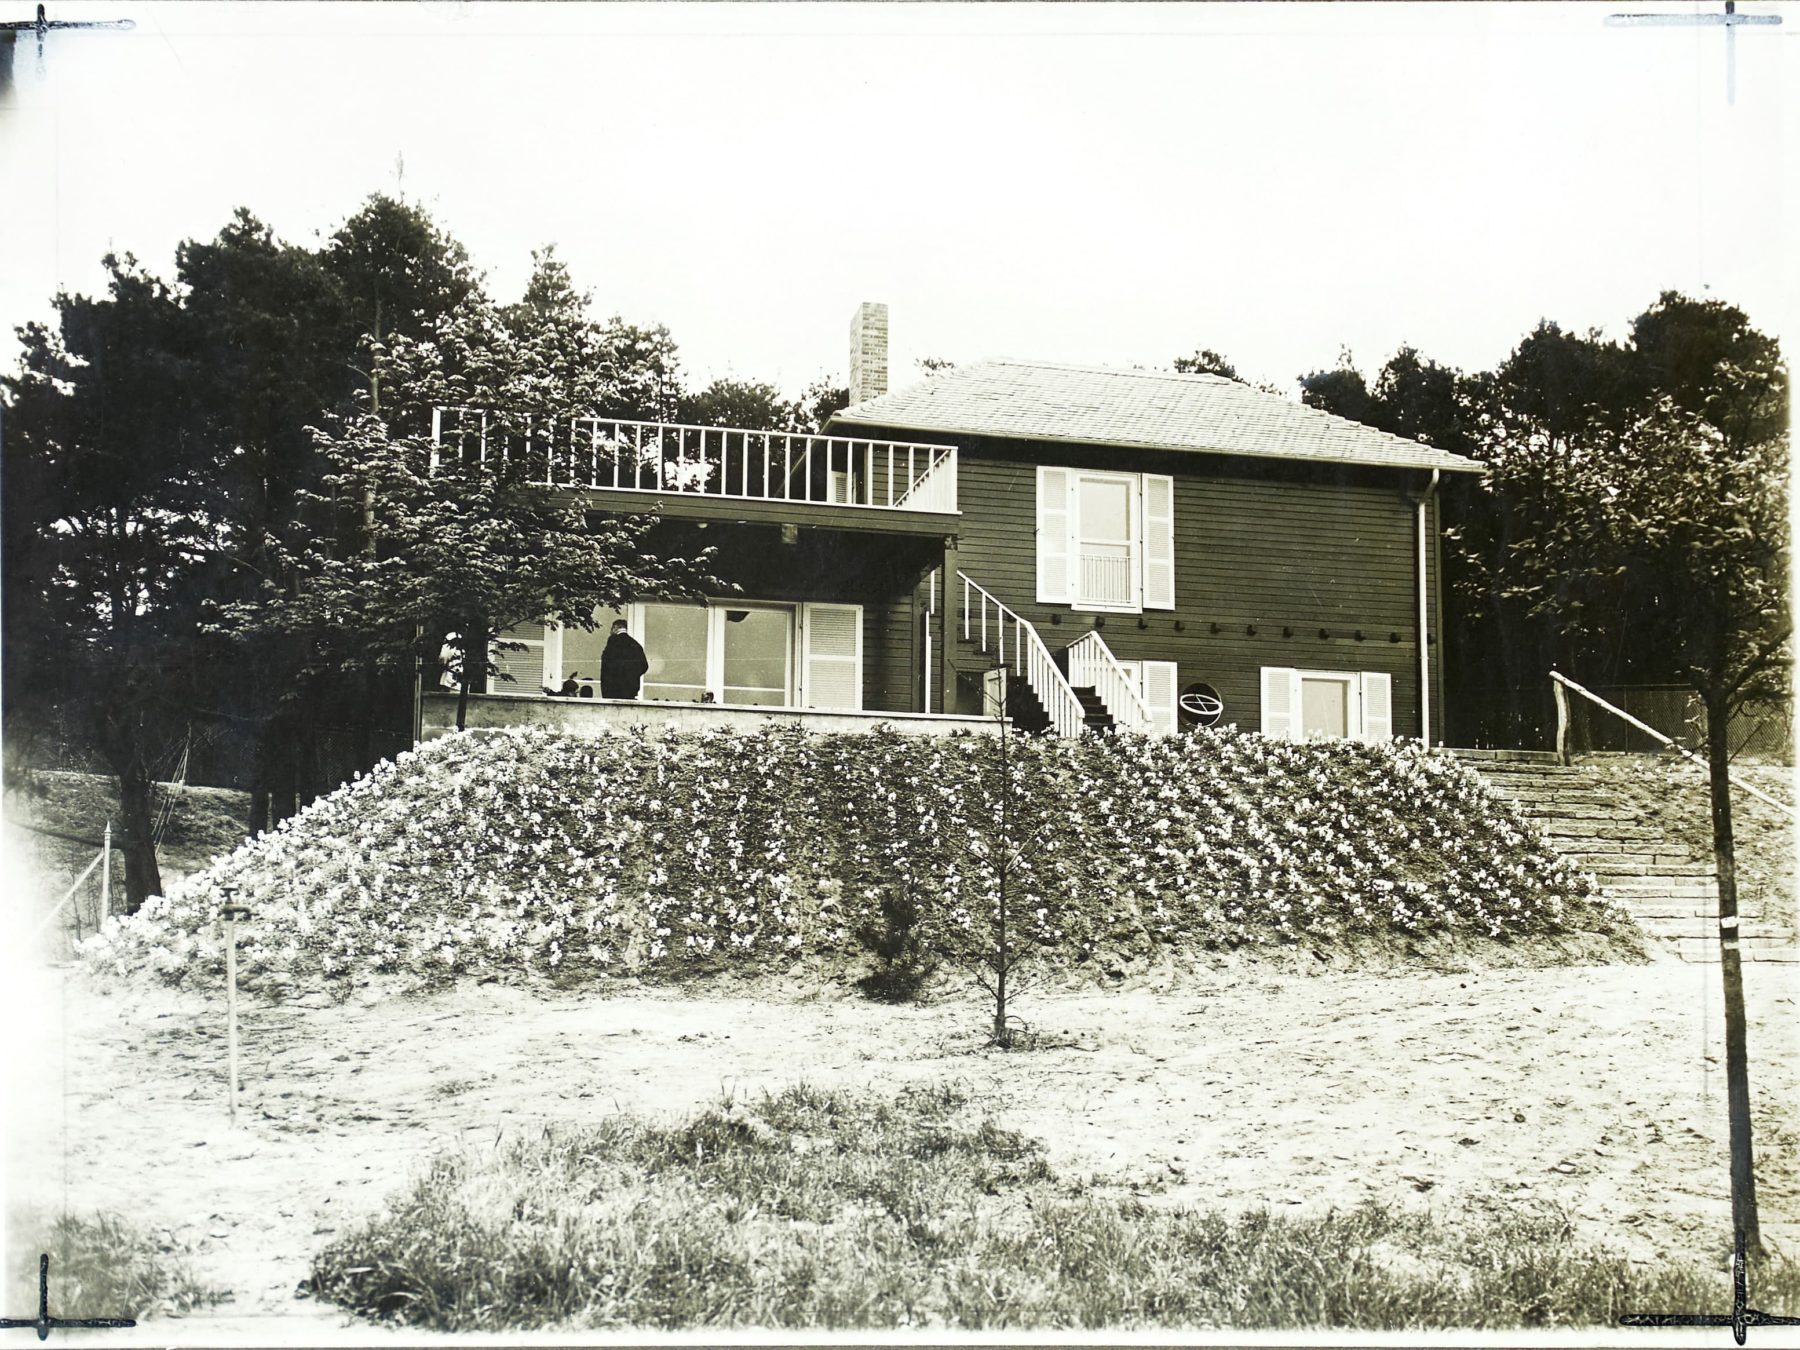 Schwarz-weiß Fotografie mit einem Haus und Blumengarten davor.